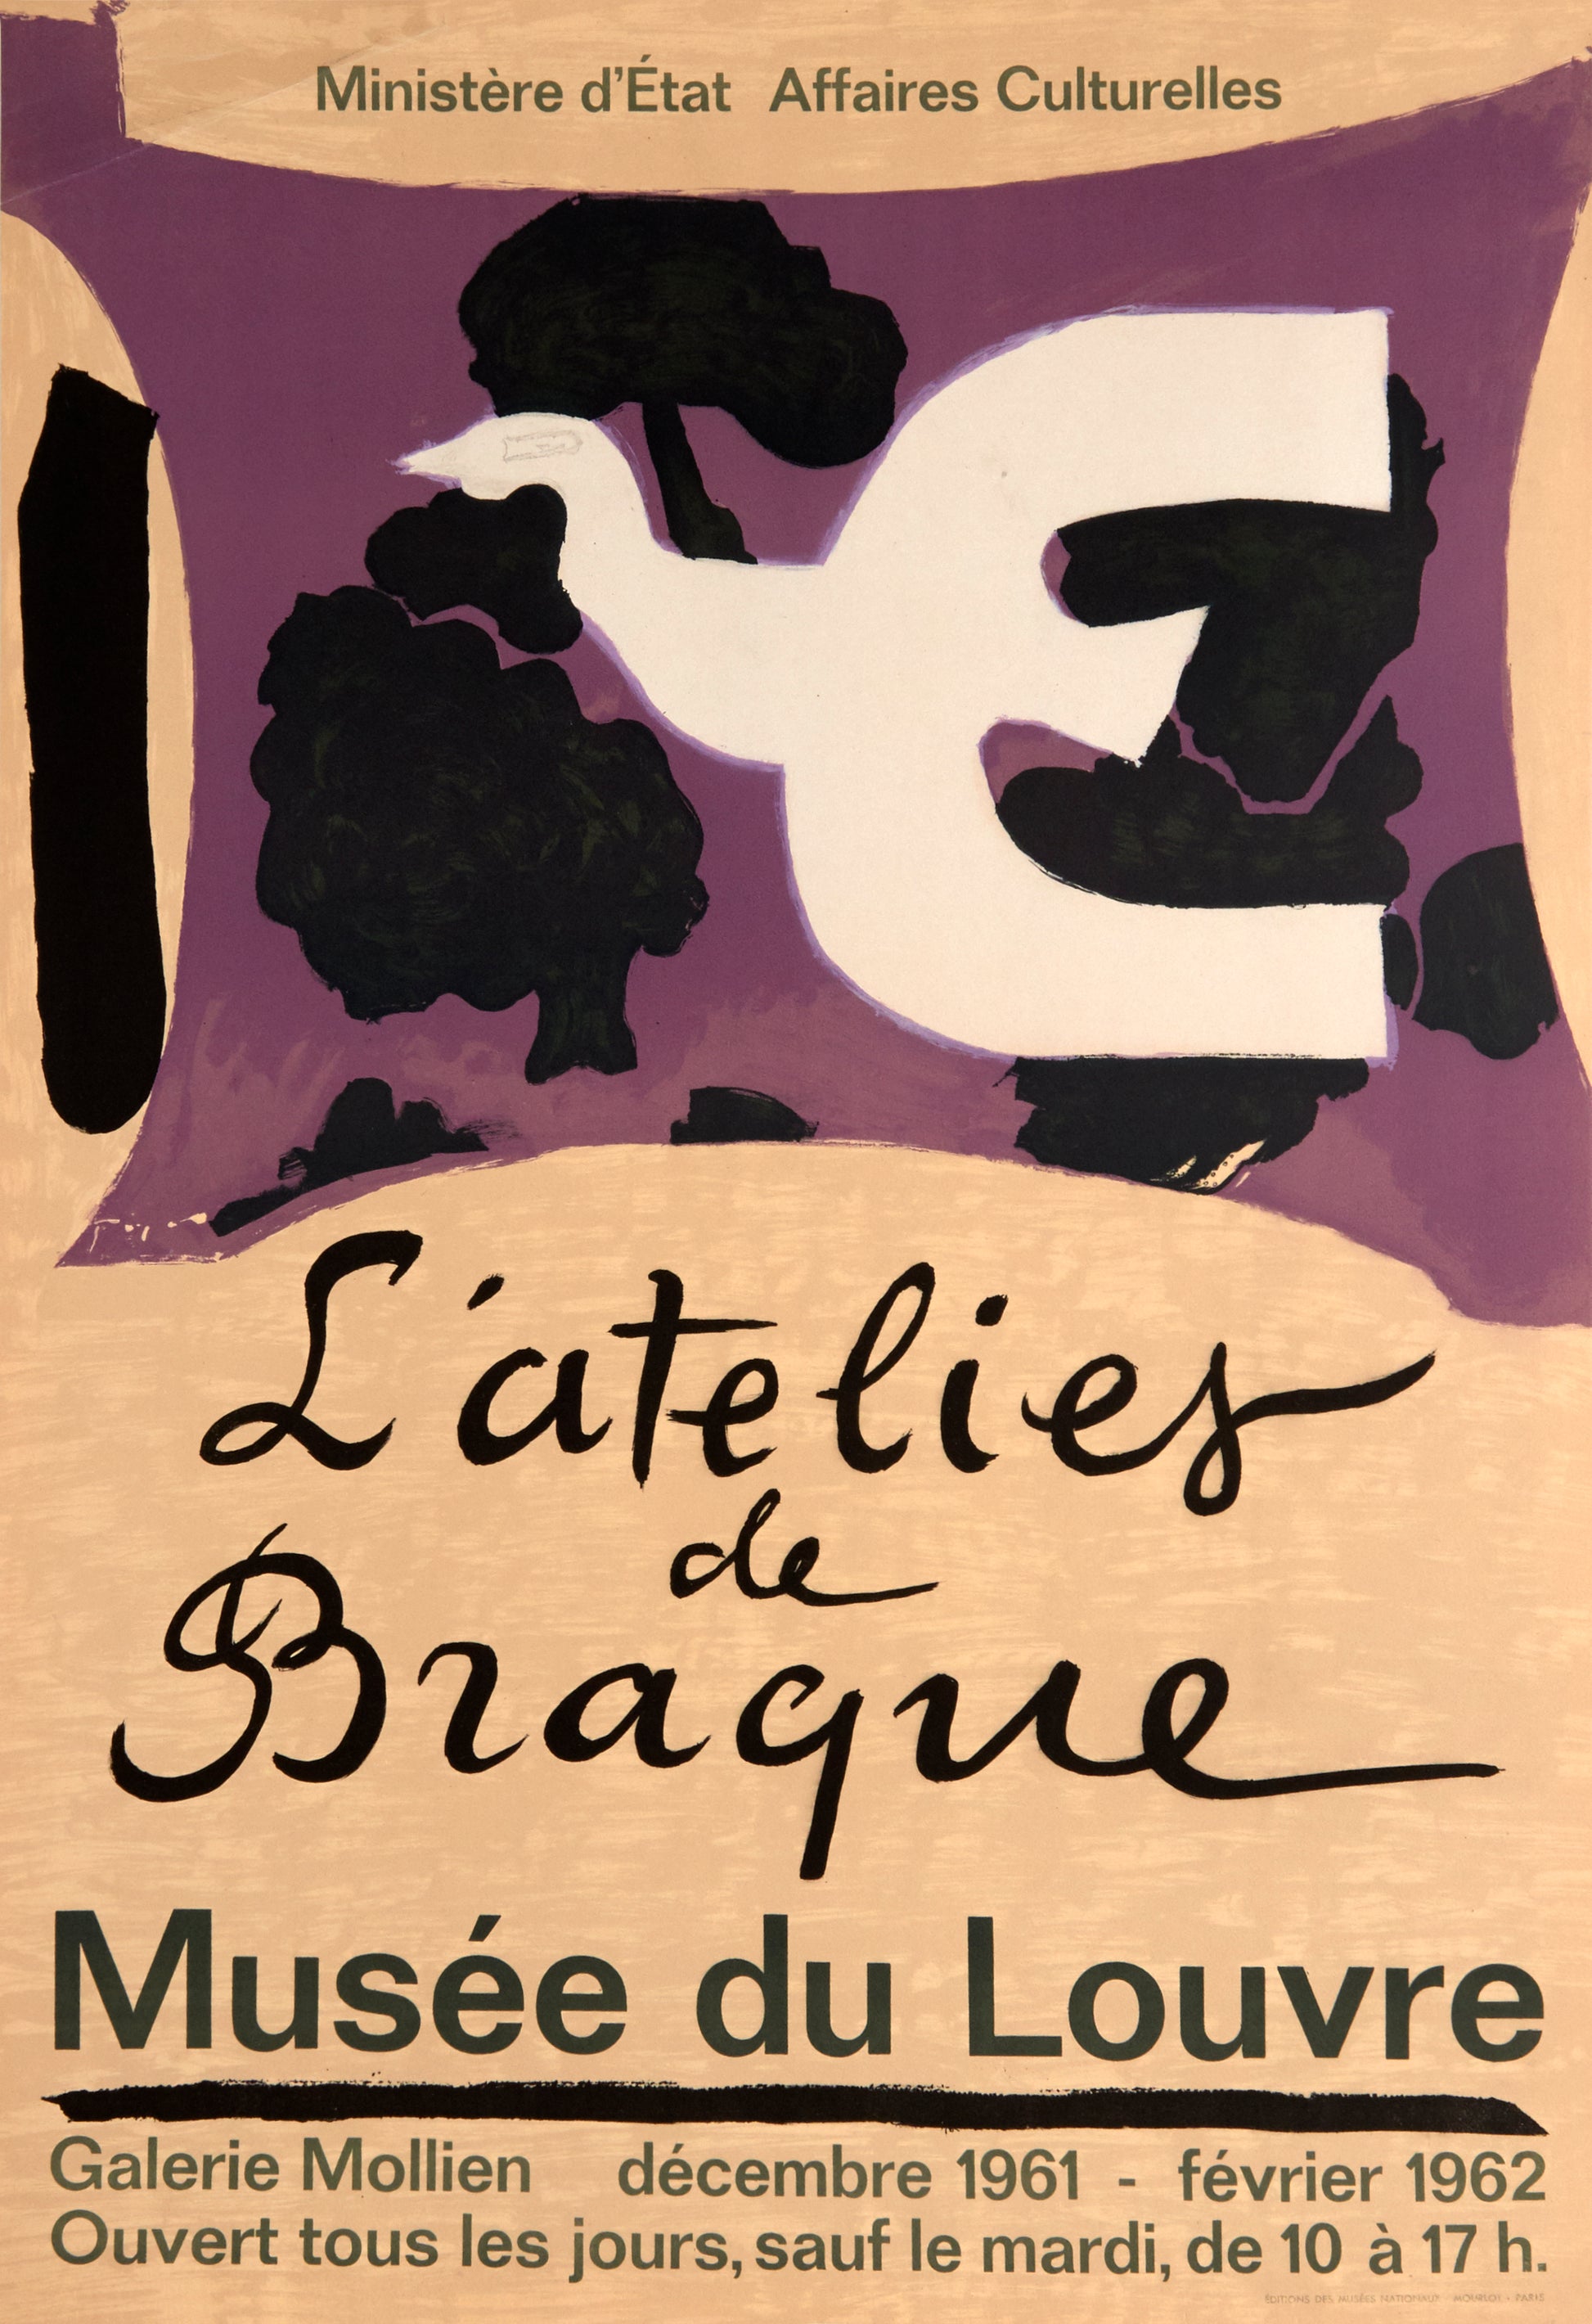 L'atelier de Braque - Musee du Louvre by Georges Braque, 1961 - Mourlot Editions - Fine_Art - Poster - Lithograph - Wall Art - Vintage - Prints - Original